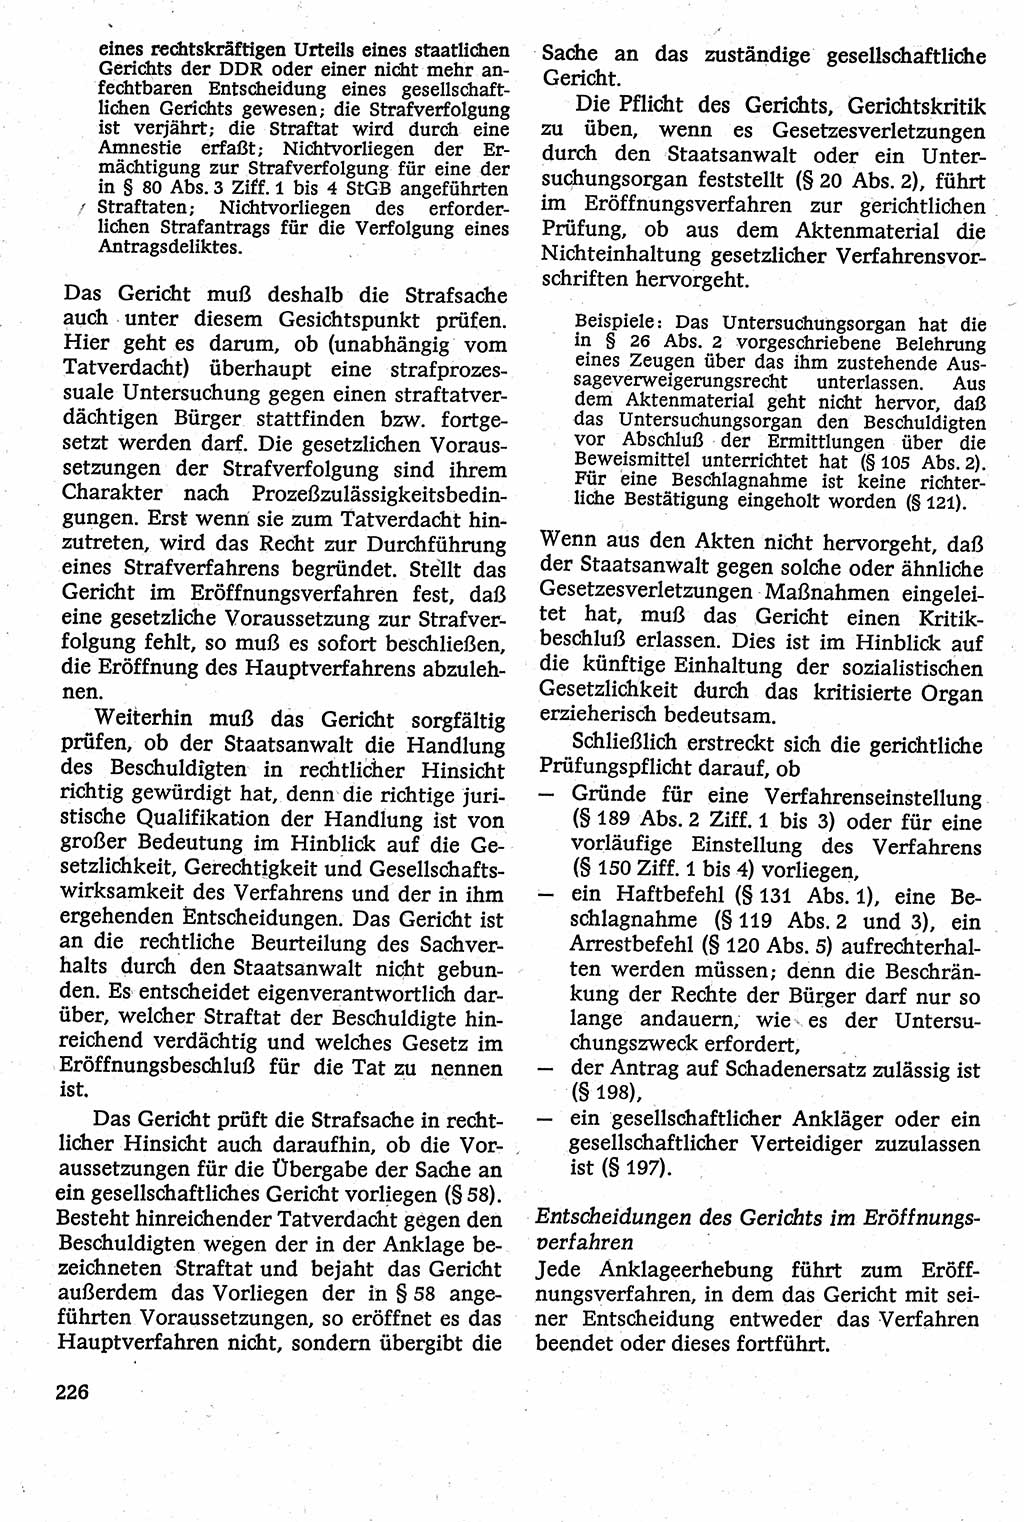 Strafverfahrensrecht [Deutsche Demokratische Republik (DDR)], Lehrbuch 1982, Seite 226 (Strafverf.-R. DDR Lb. 1982, S. 226)